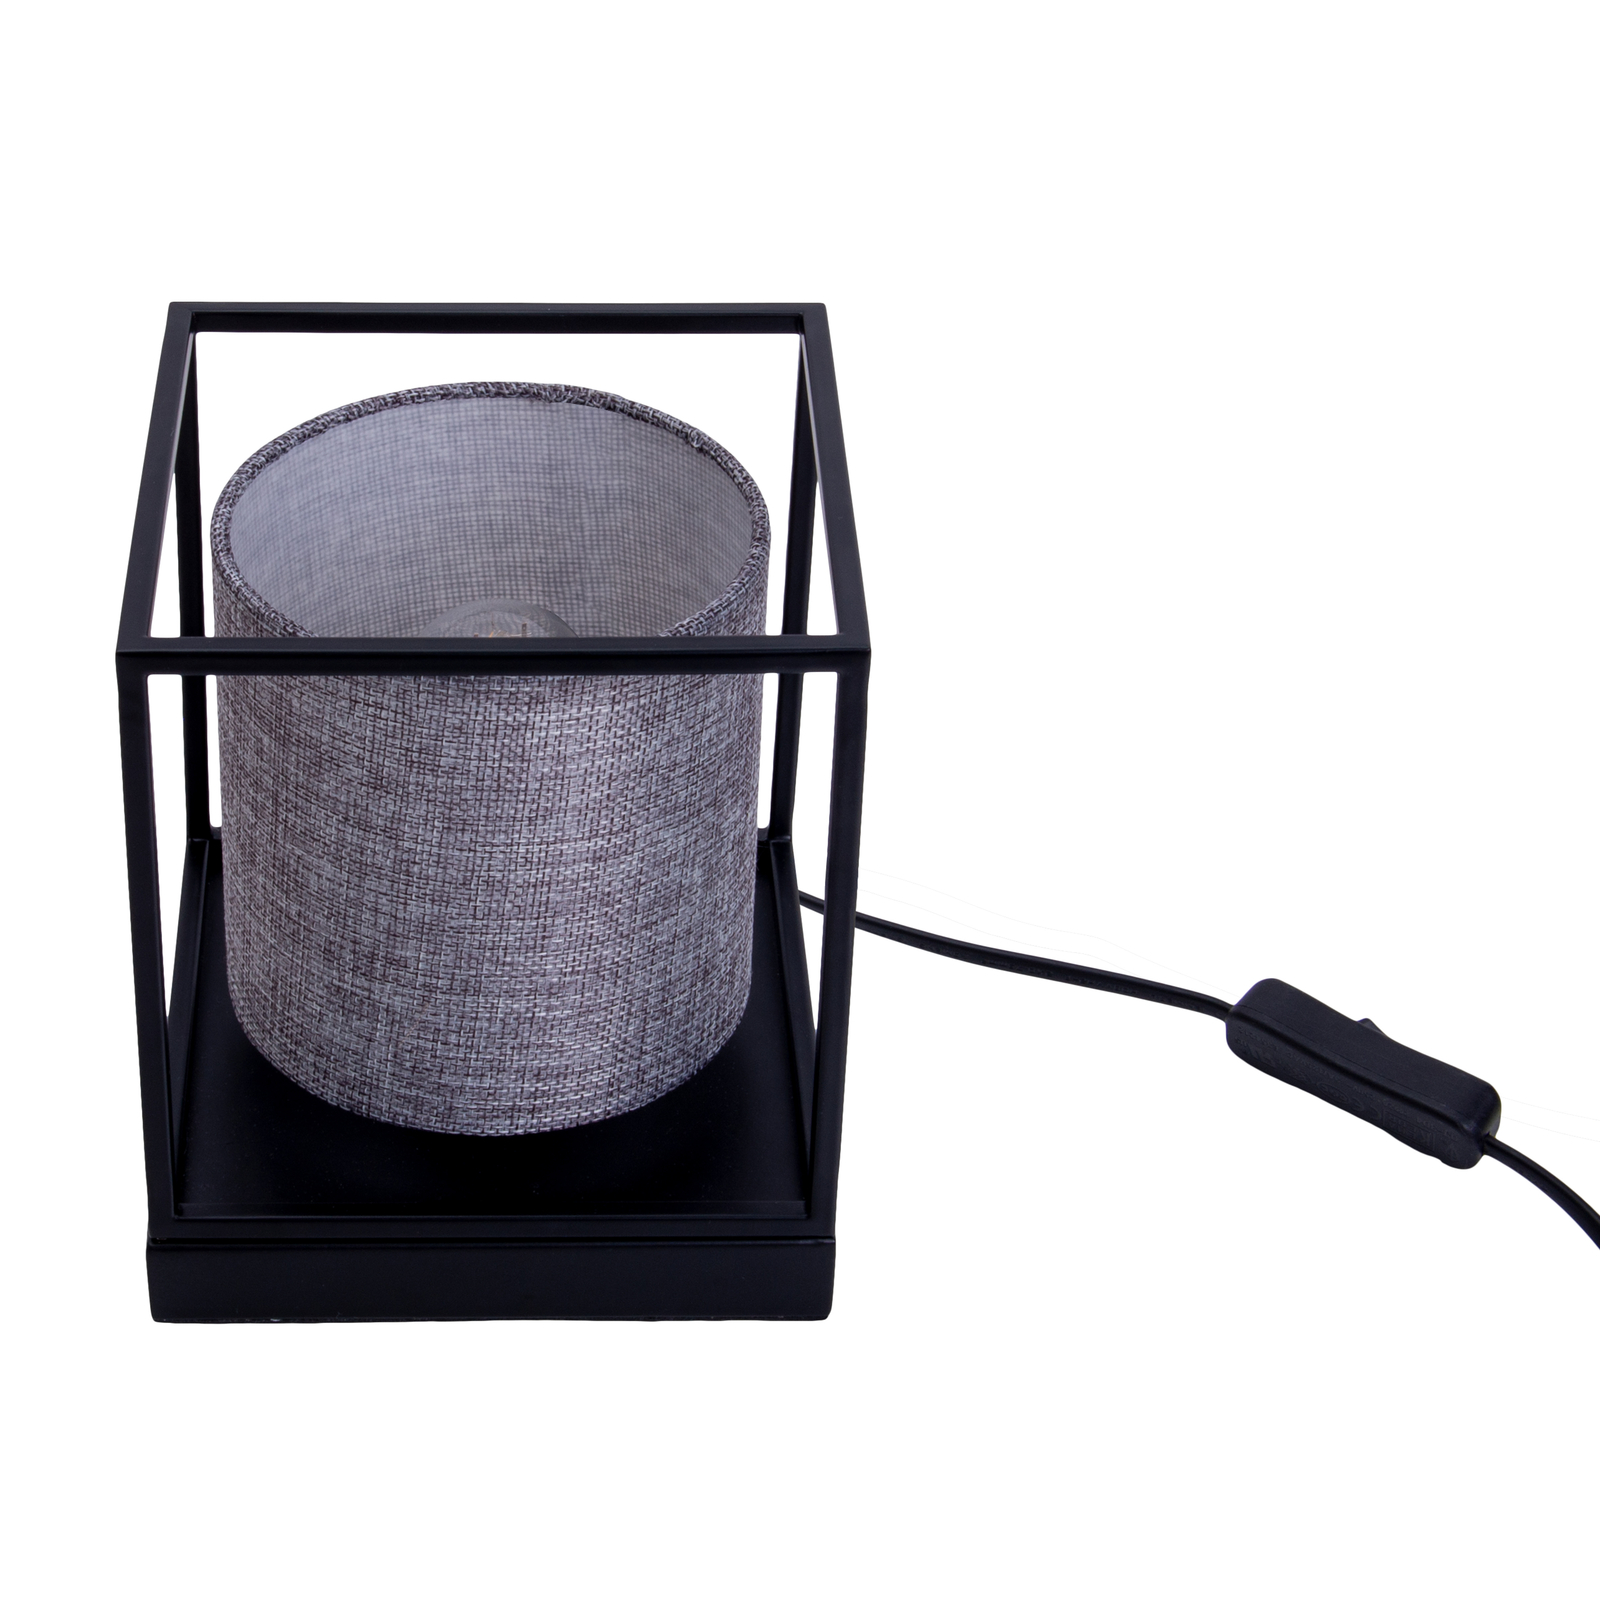 Beta table lamp, metal, grey fabric lampshade